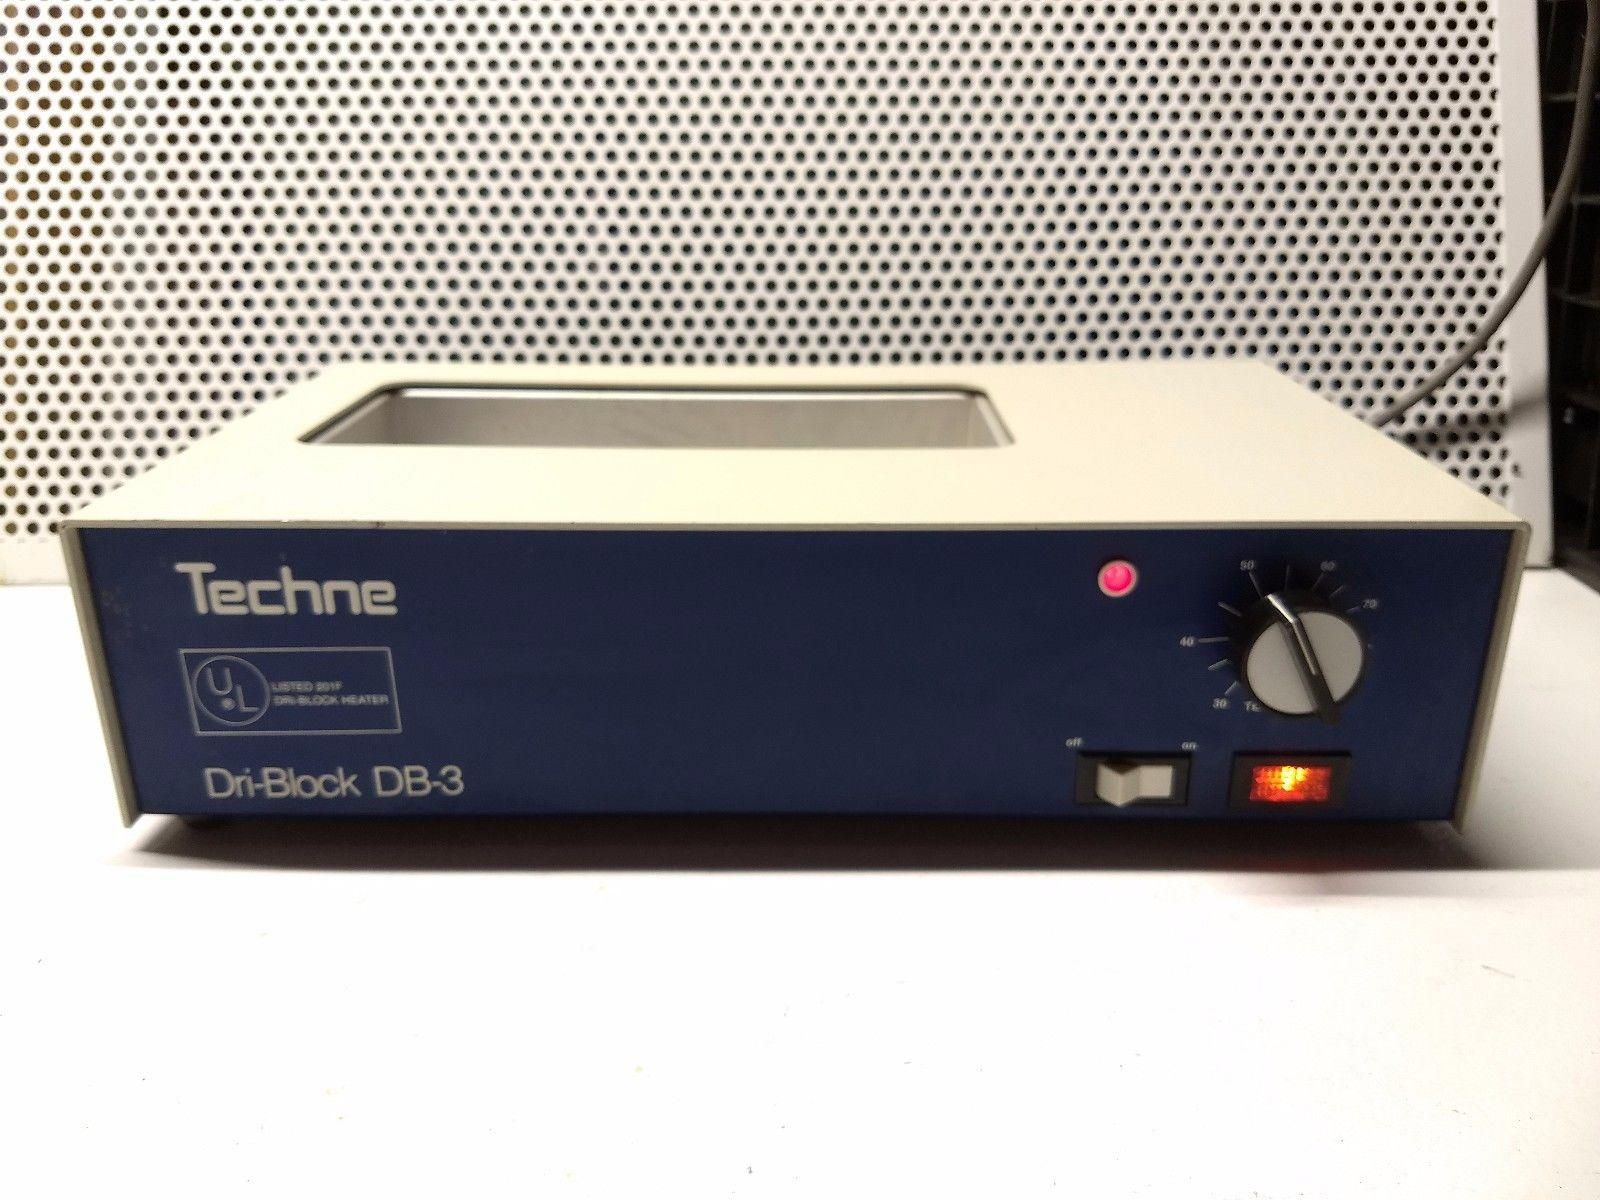 TECHNE Dri-Block DB-3 Lab Block Heater